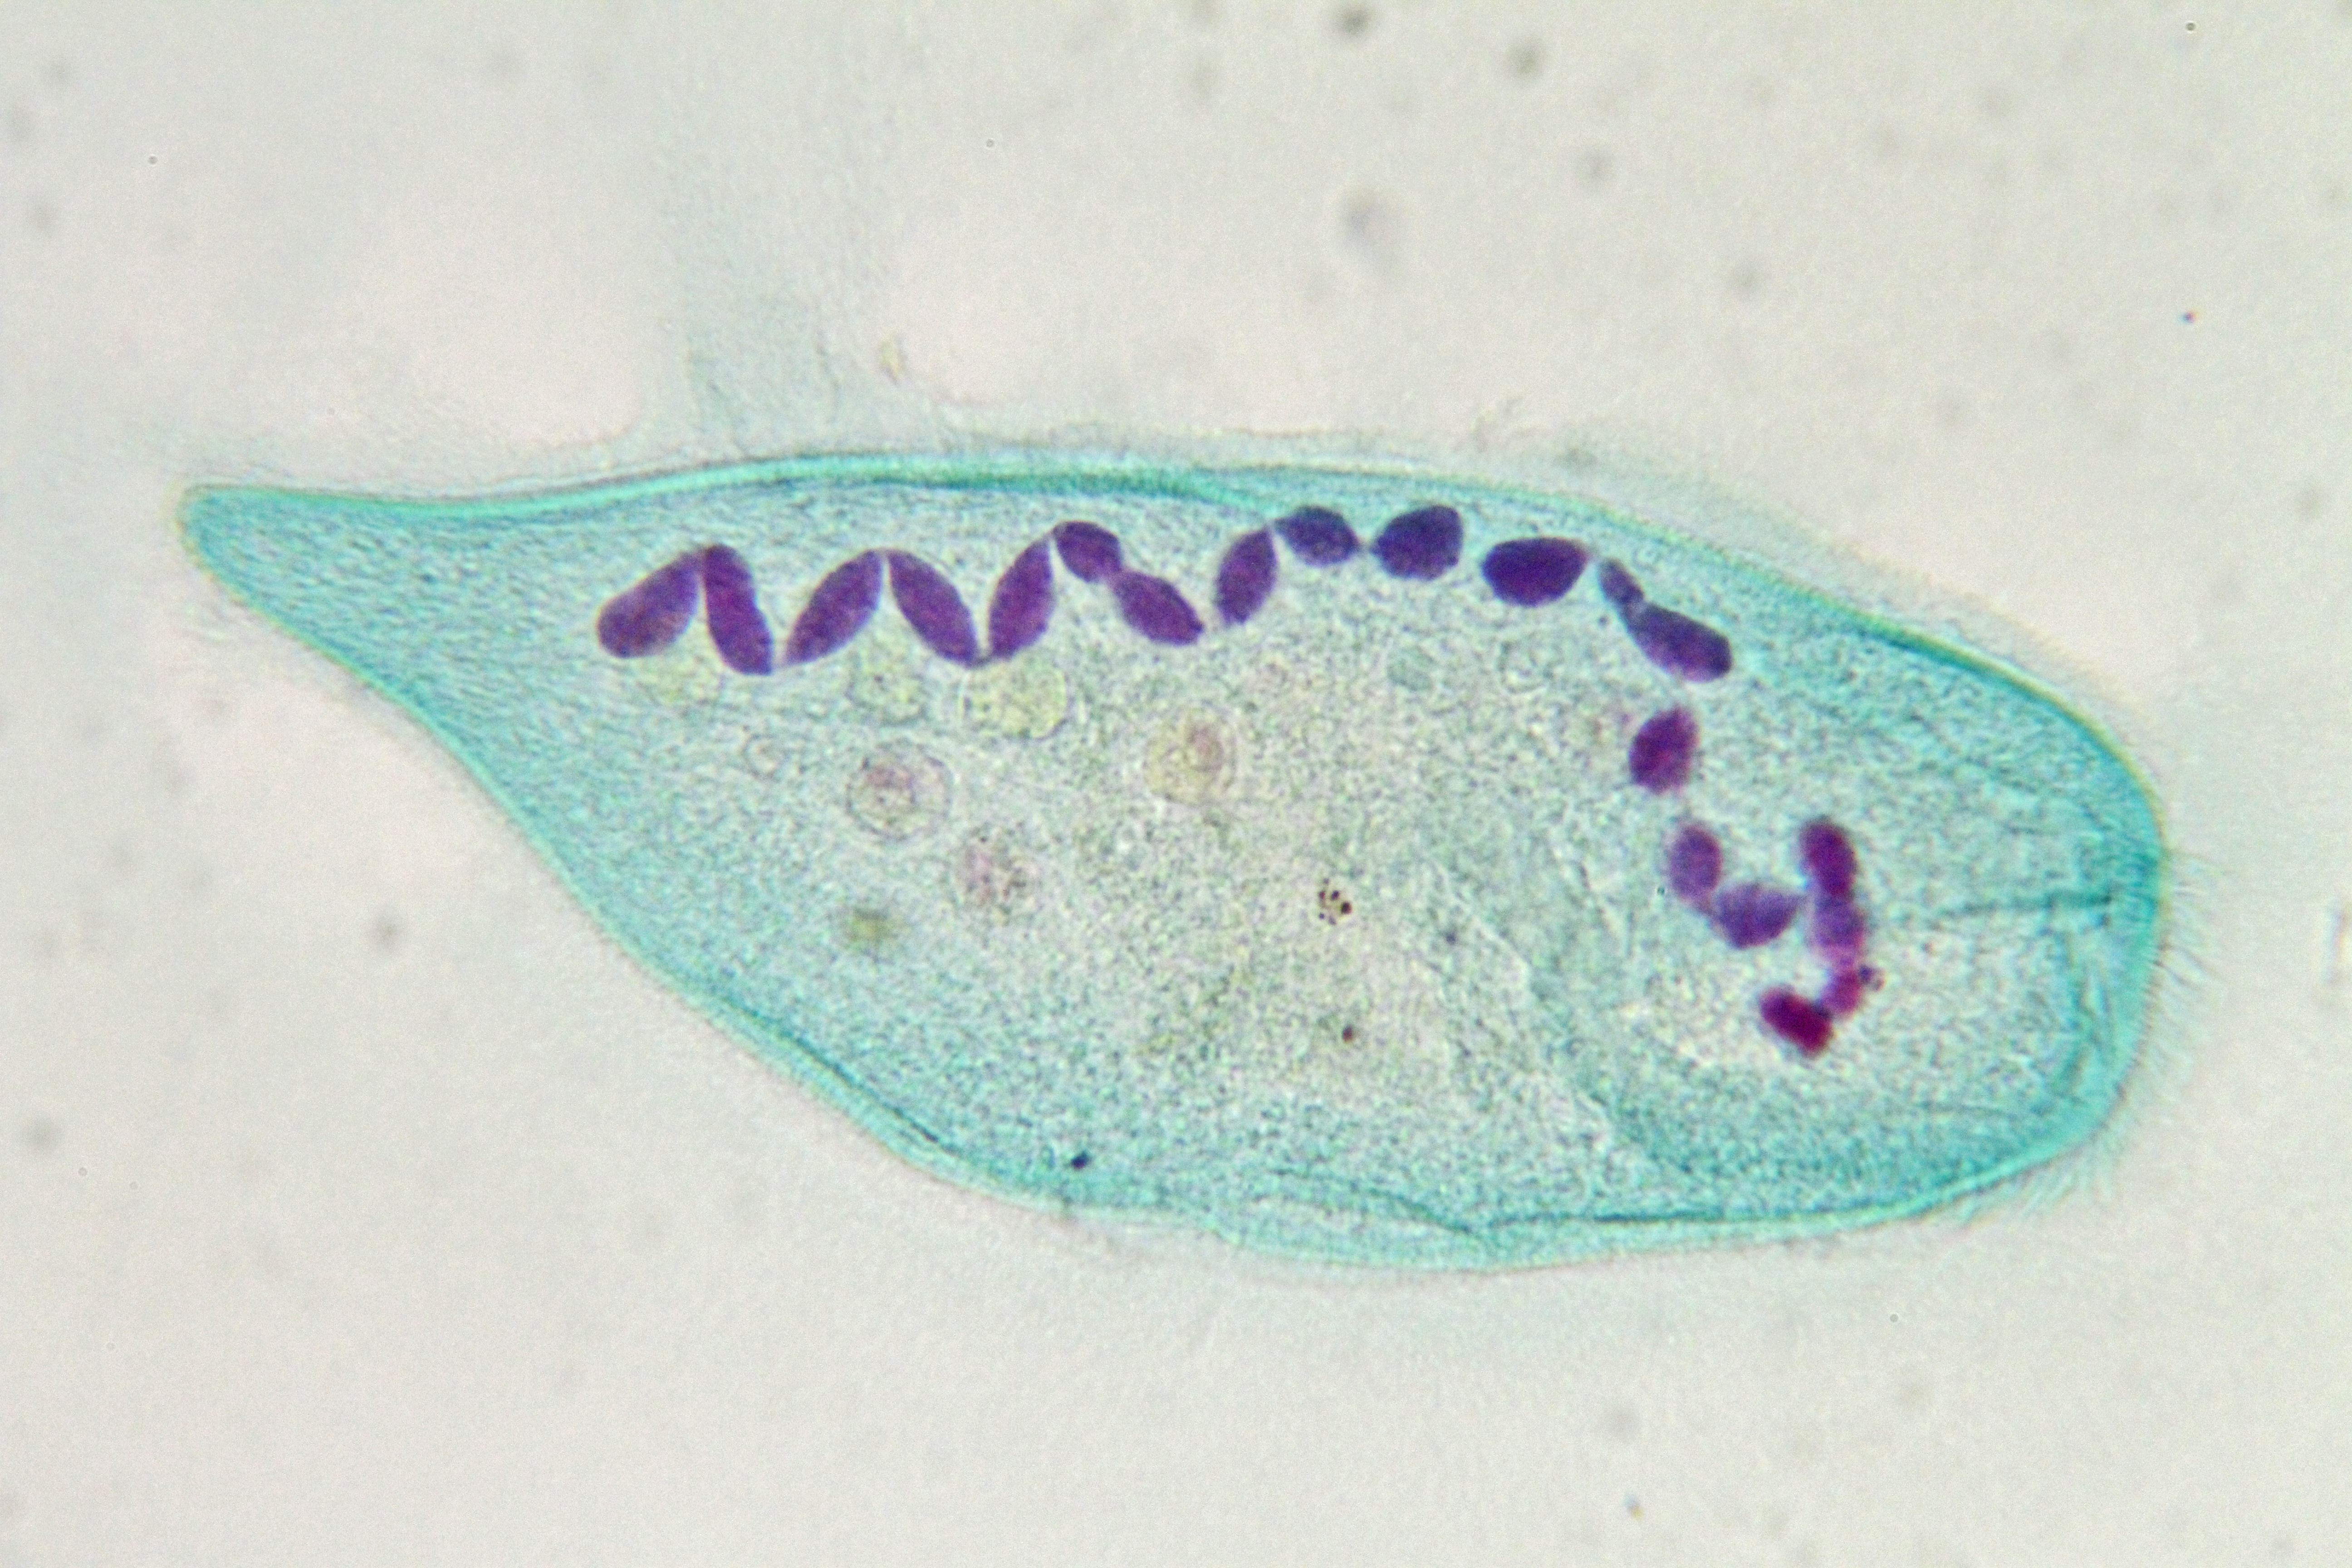 Le noyau moniliforme des ciliés